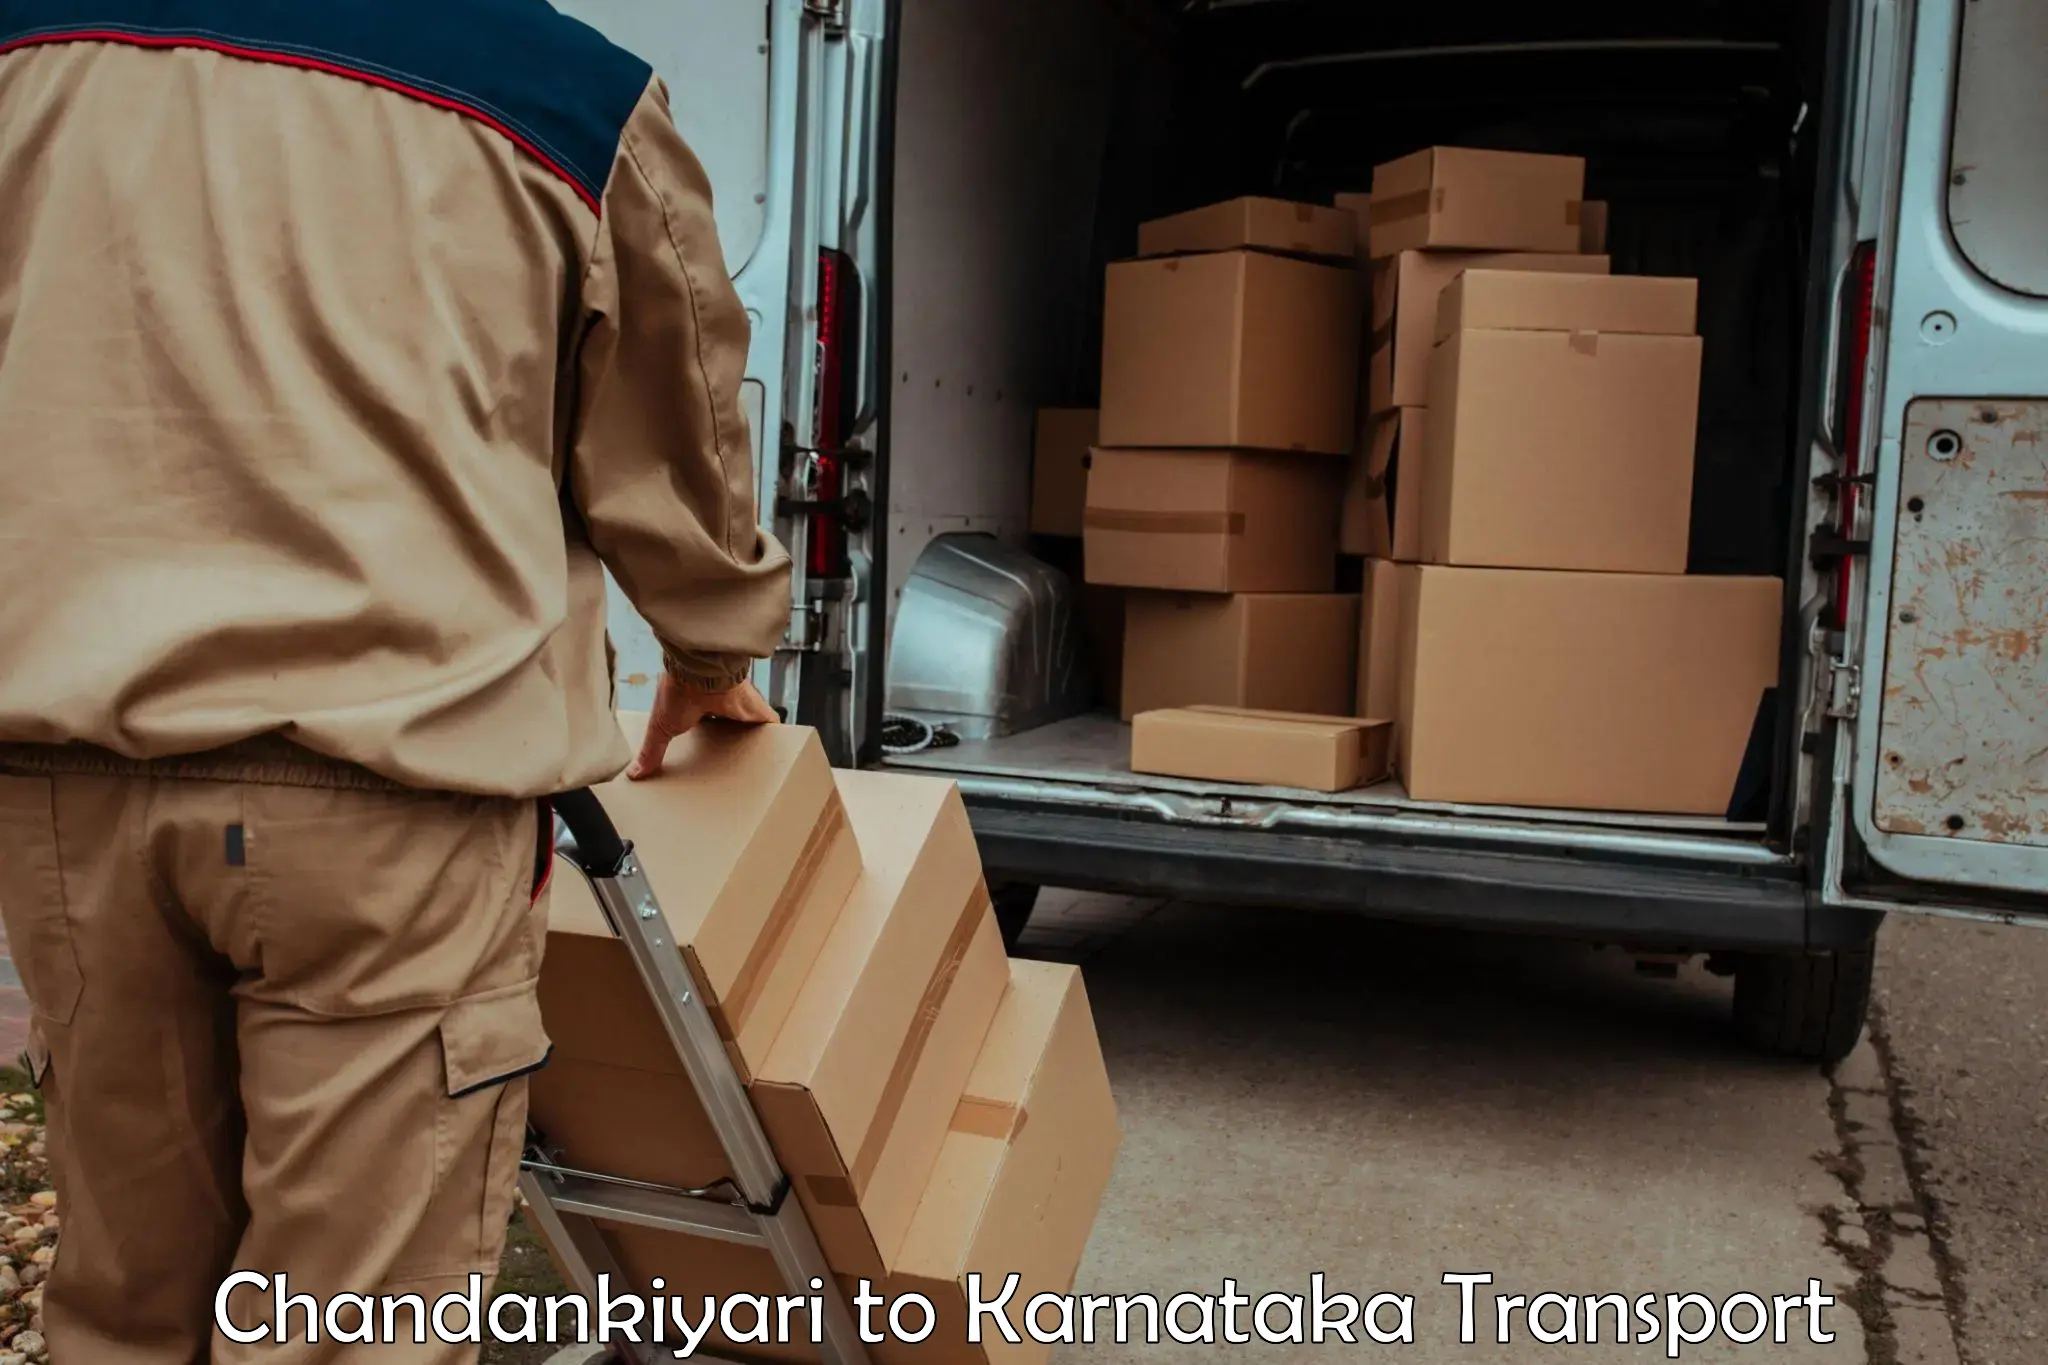 Truck transport companies in India Chandankiyari to Thirthahalli